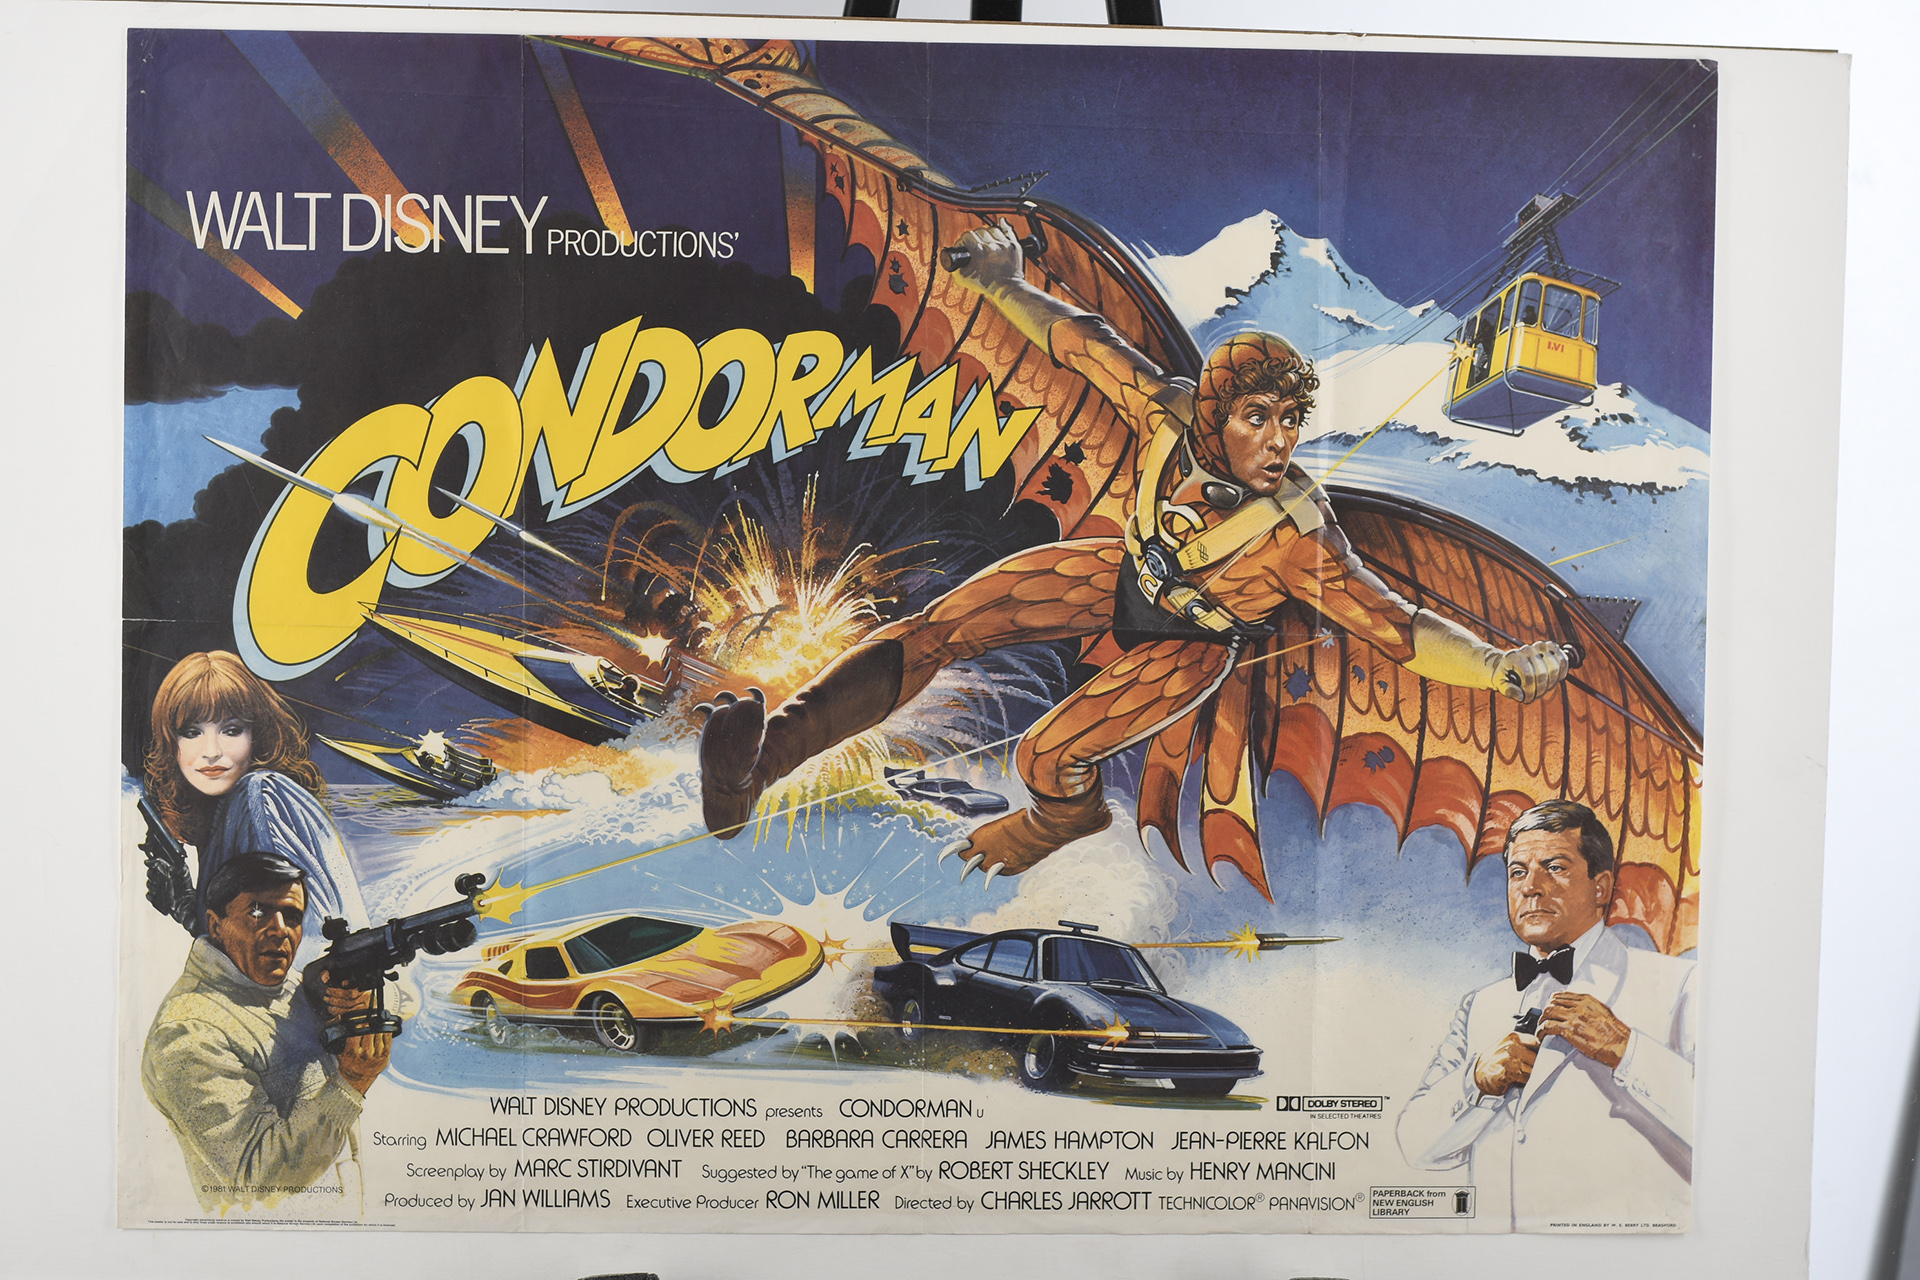 Original "Condorman" Cinema Poster